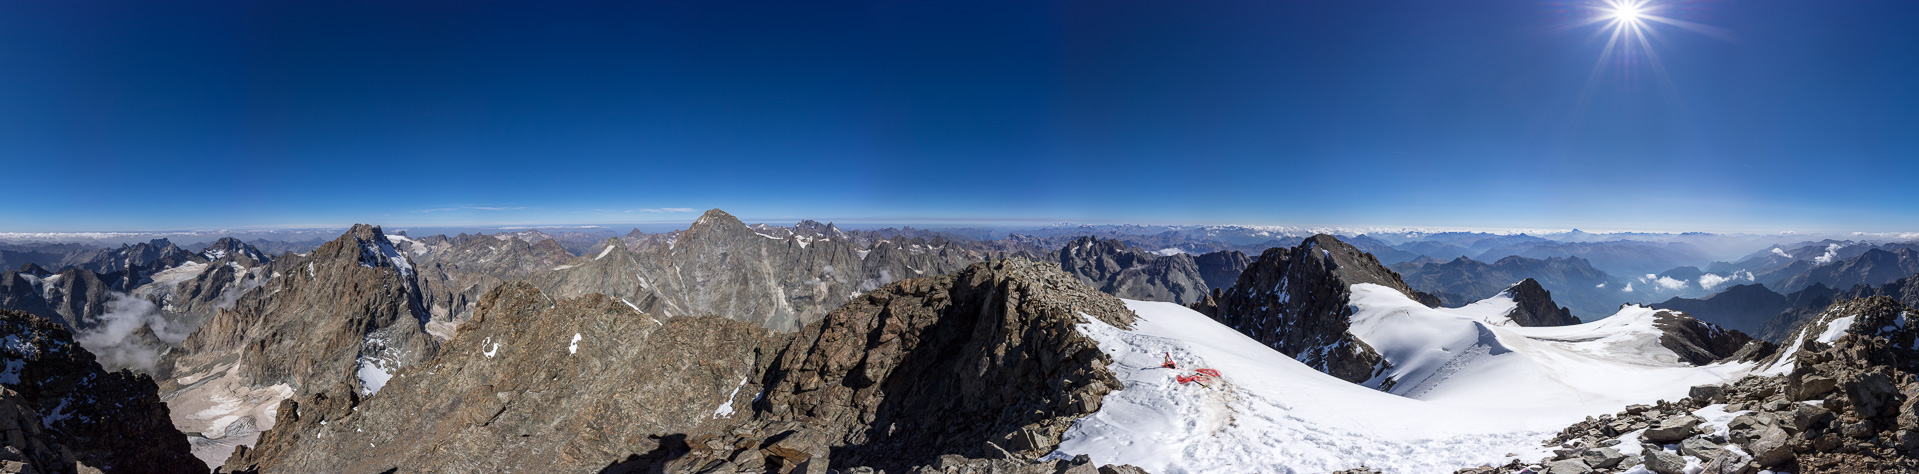 Gipfelpanorama mit Blick vom Matterhorn bis zum Monte Viso.